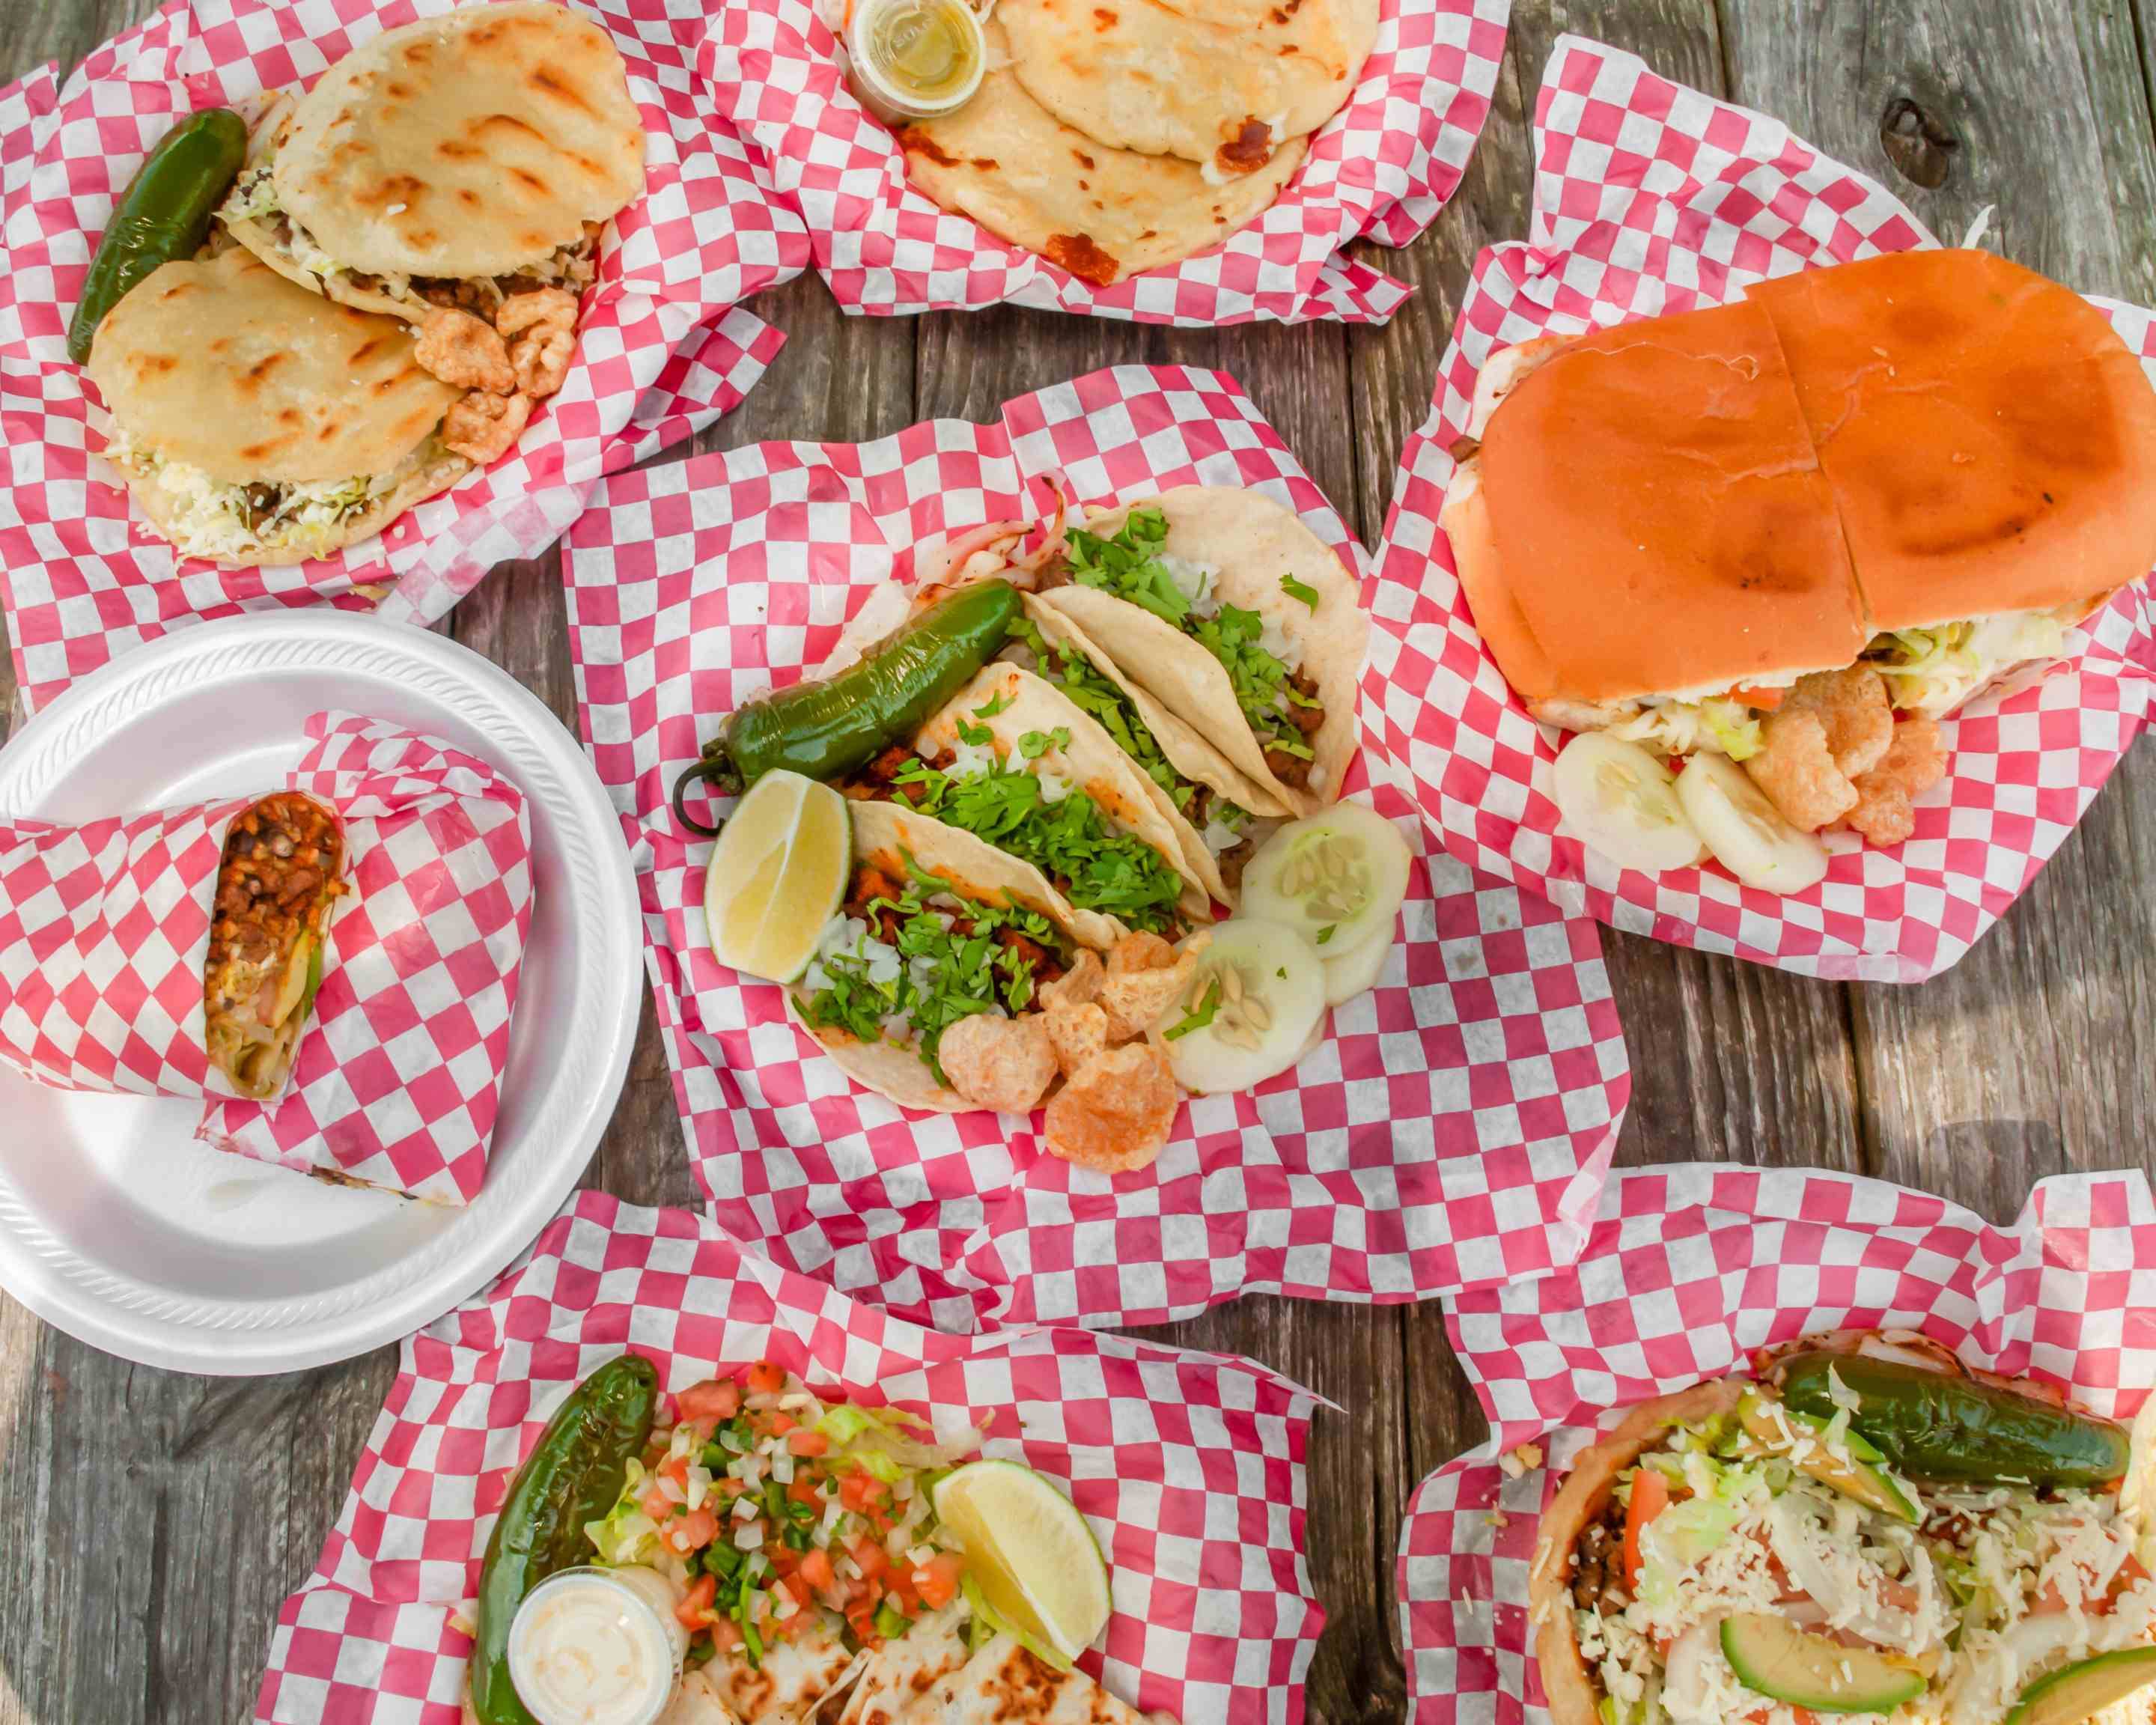 Order Tacos El Brito Menu Delivery【Menu & Prices】| Raleigh-Durham ...